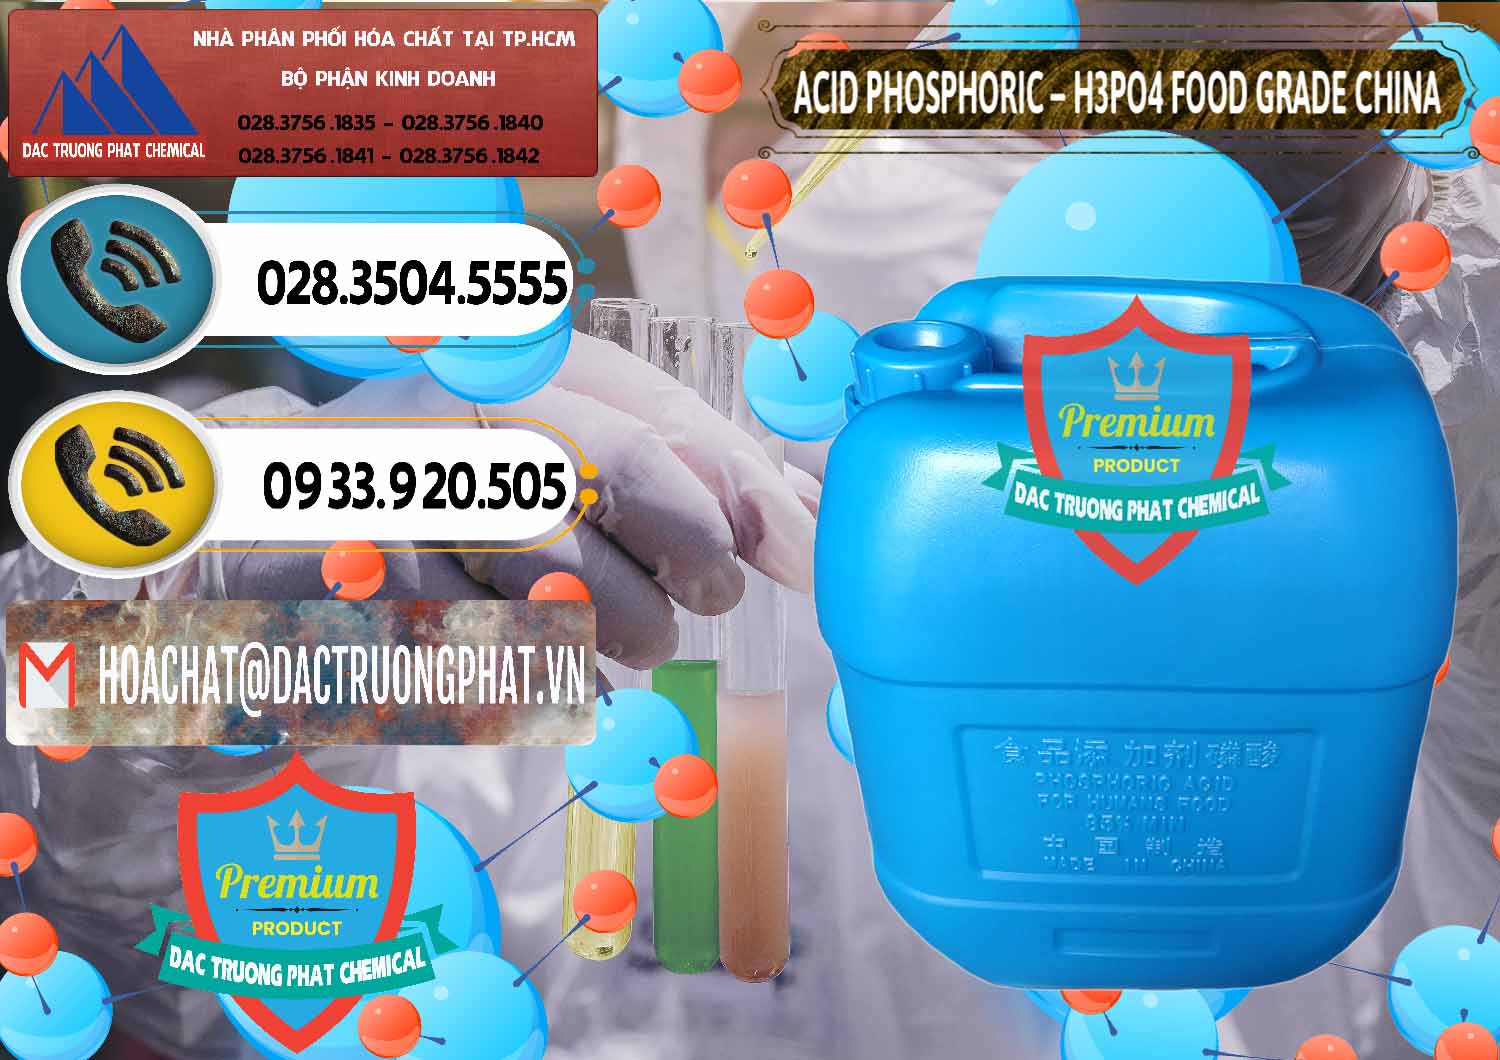 Nơi chuyên bán _ cung ứng Acid Phosphoric – H3PO4 85% Food Grade Trung Quốc China - 0015 - Nơi chuyên nhập khẩu - cung cấp hóa chất tại TP.HCM - hoachatdetnhuom.vn